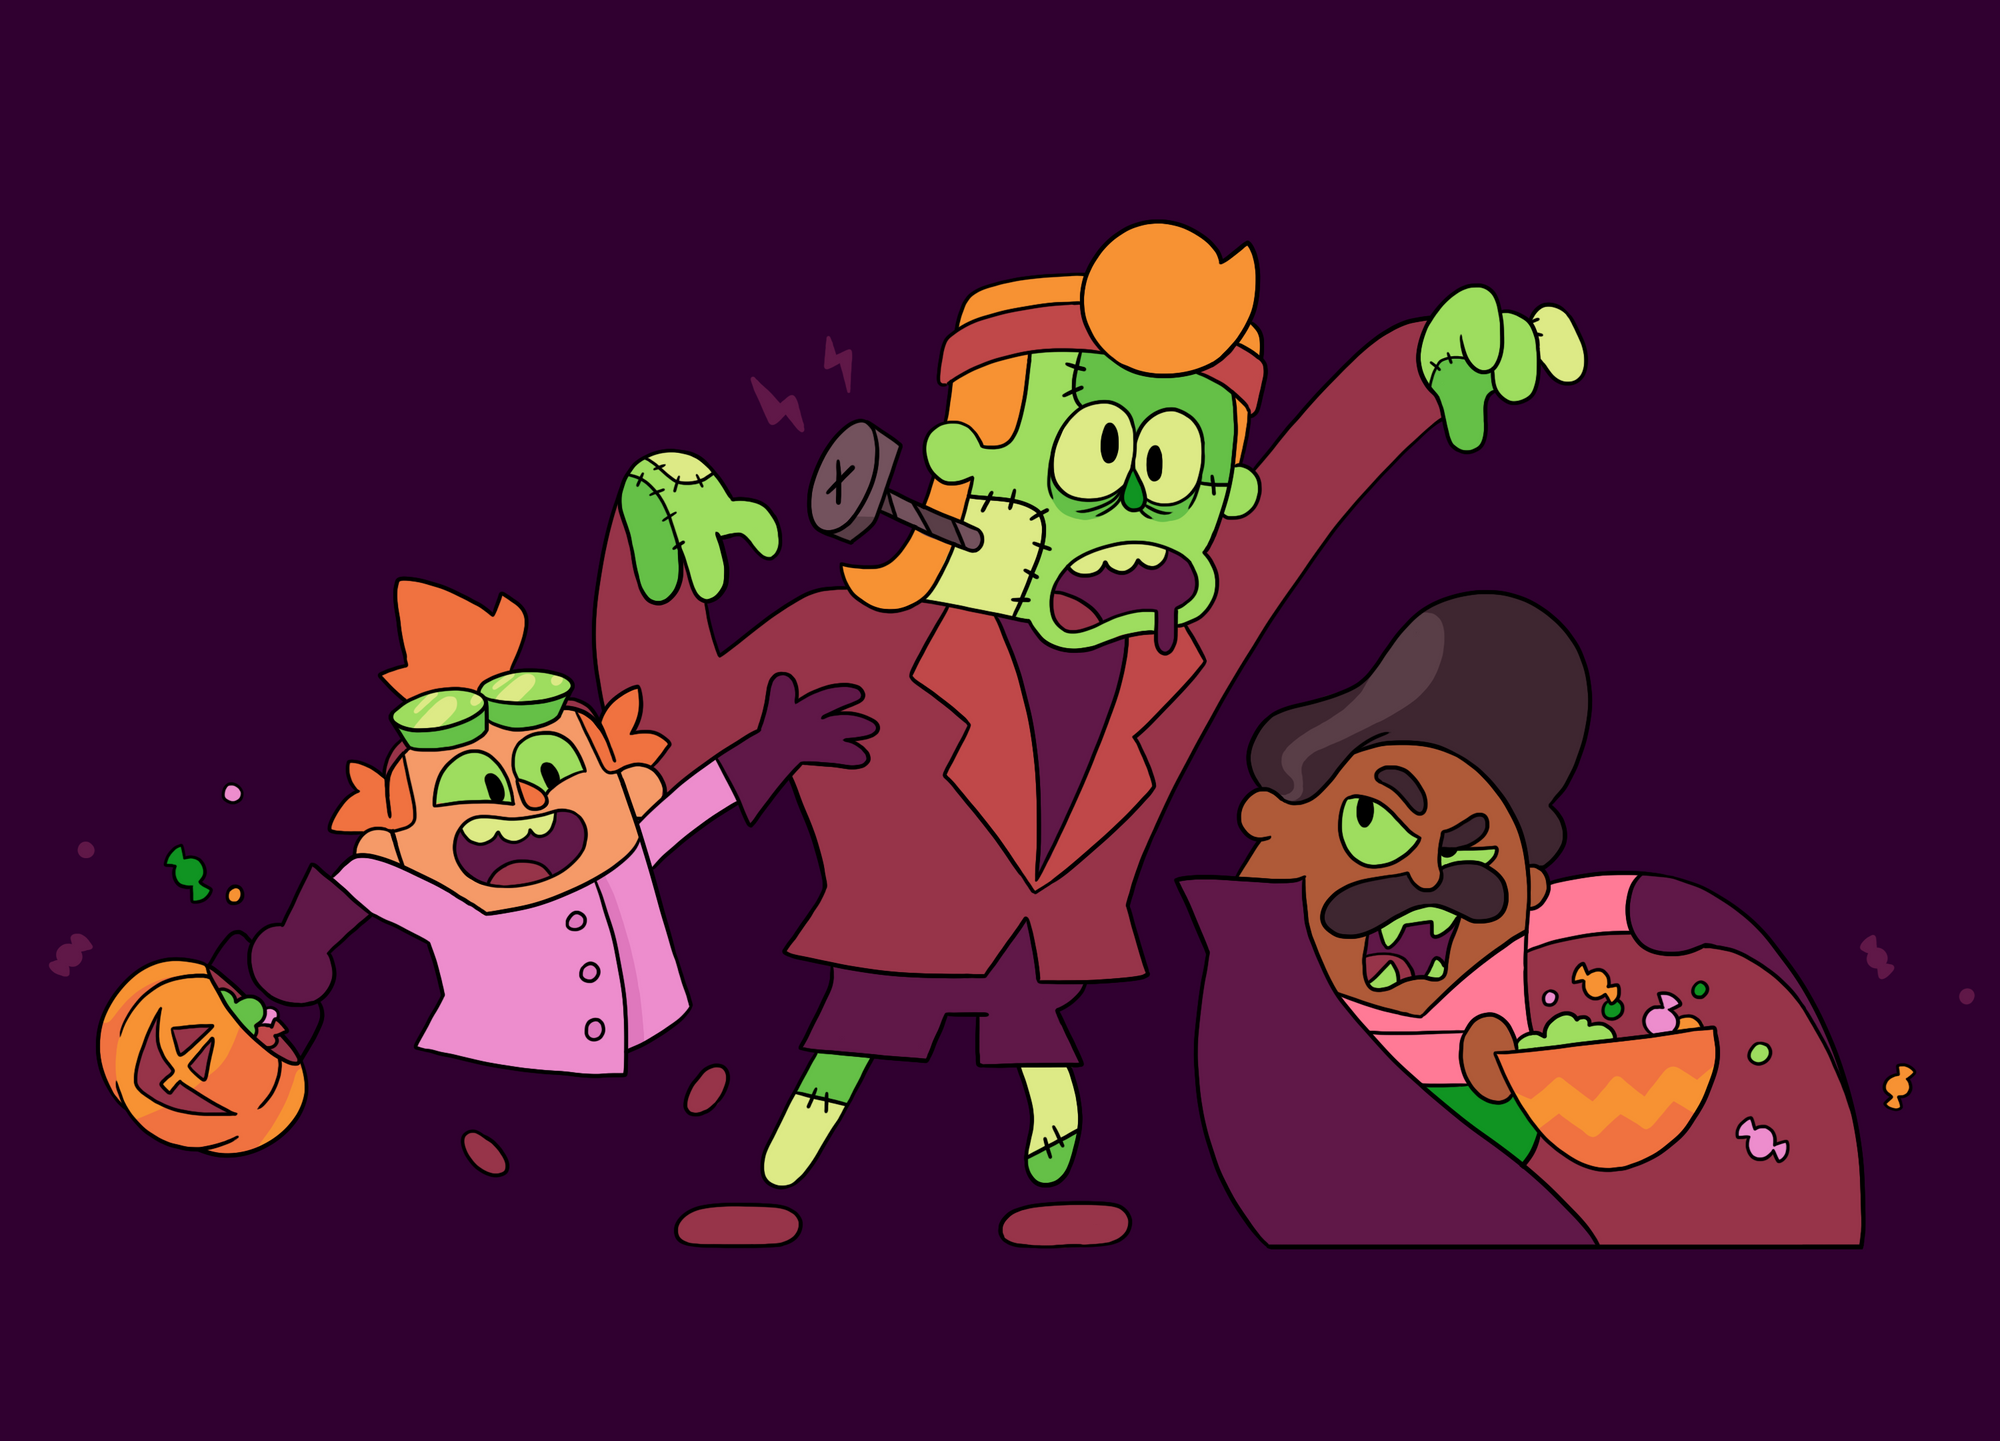 Die Duolingo-Charaktere Junior, Eddy und Oscar sind als Frankenstein-Monster verkleidet.